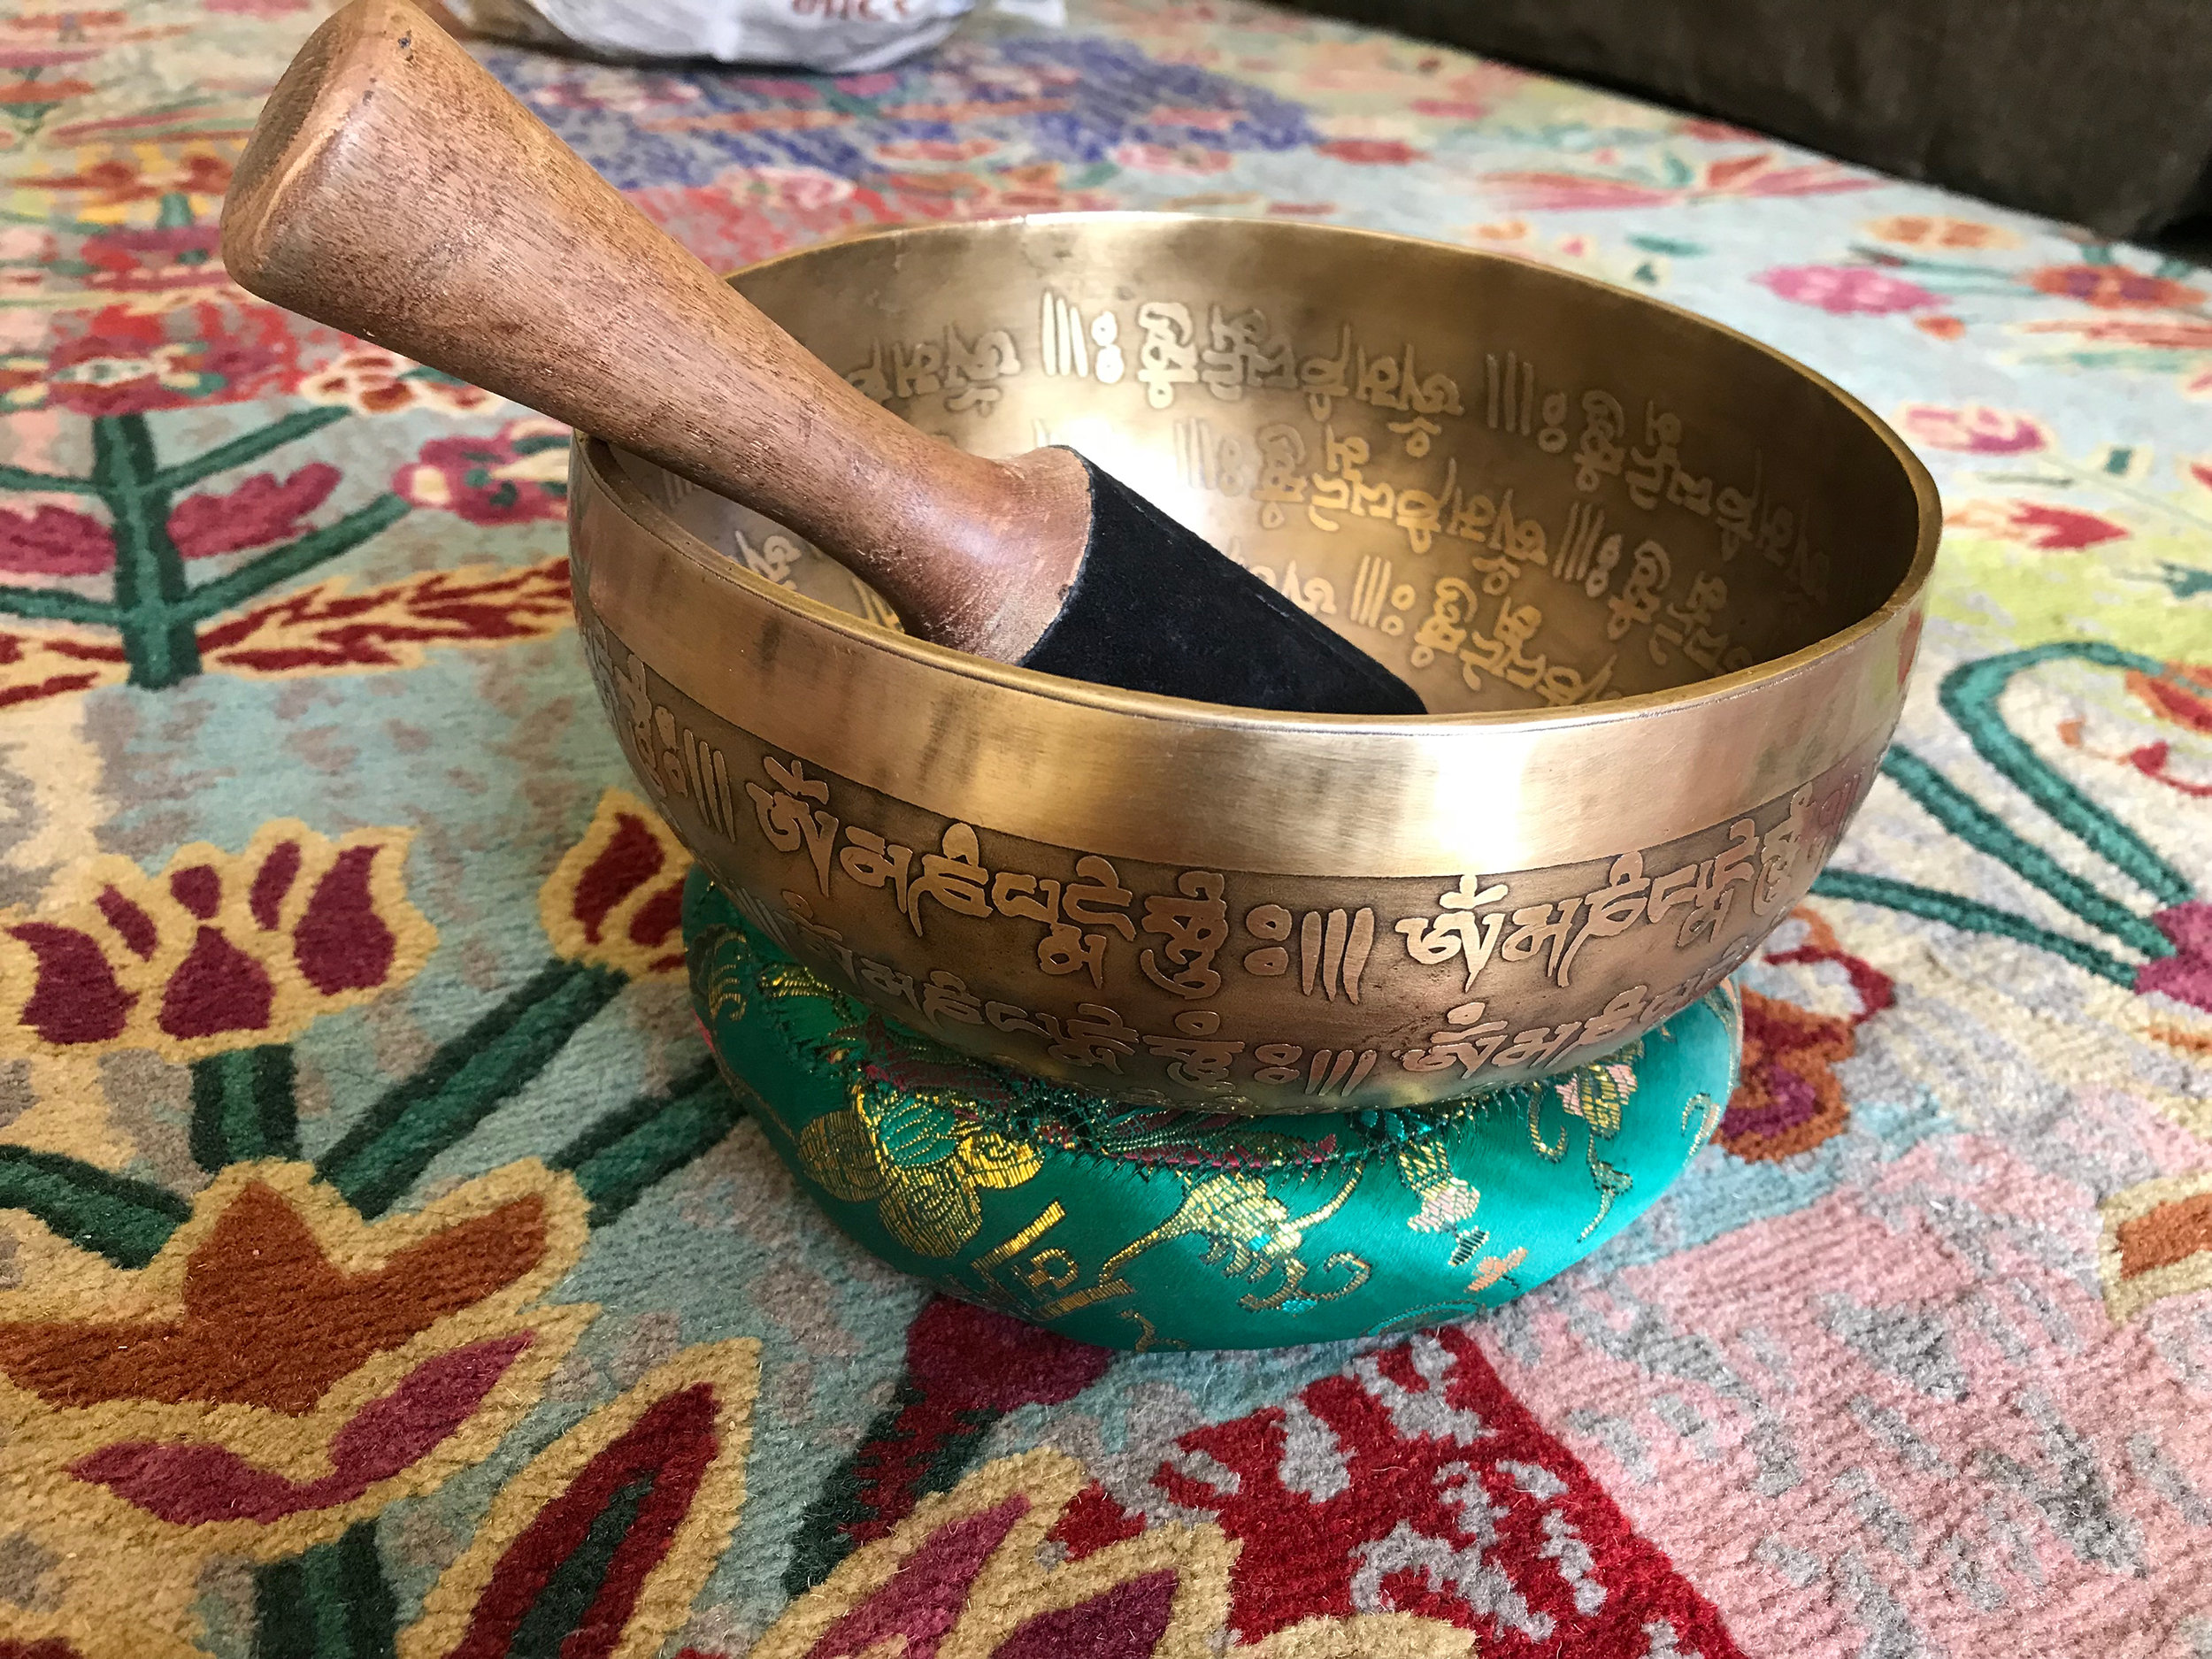 12 D Note Master Healing Mantra Carved Singing Bowl Free Singing Bowl Silk Cushion Meditation Bowl Striker and Drum Stick Tibetan Bowls 